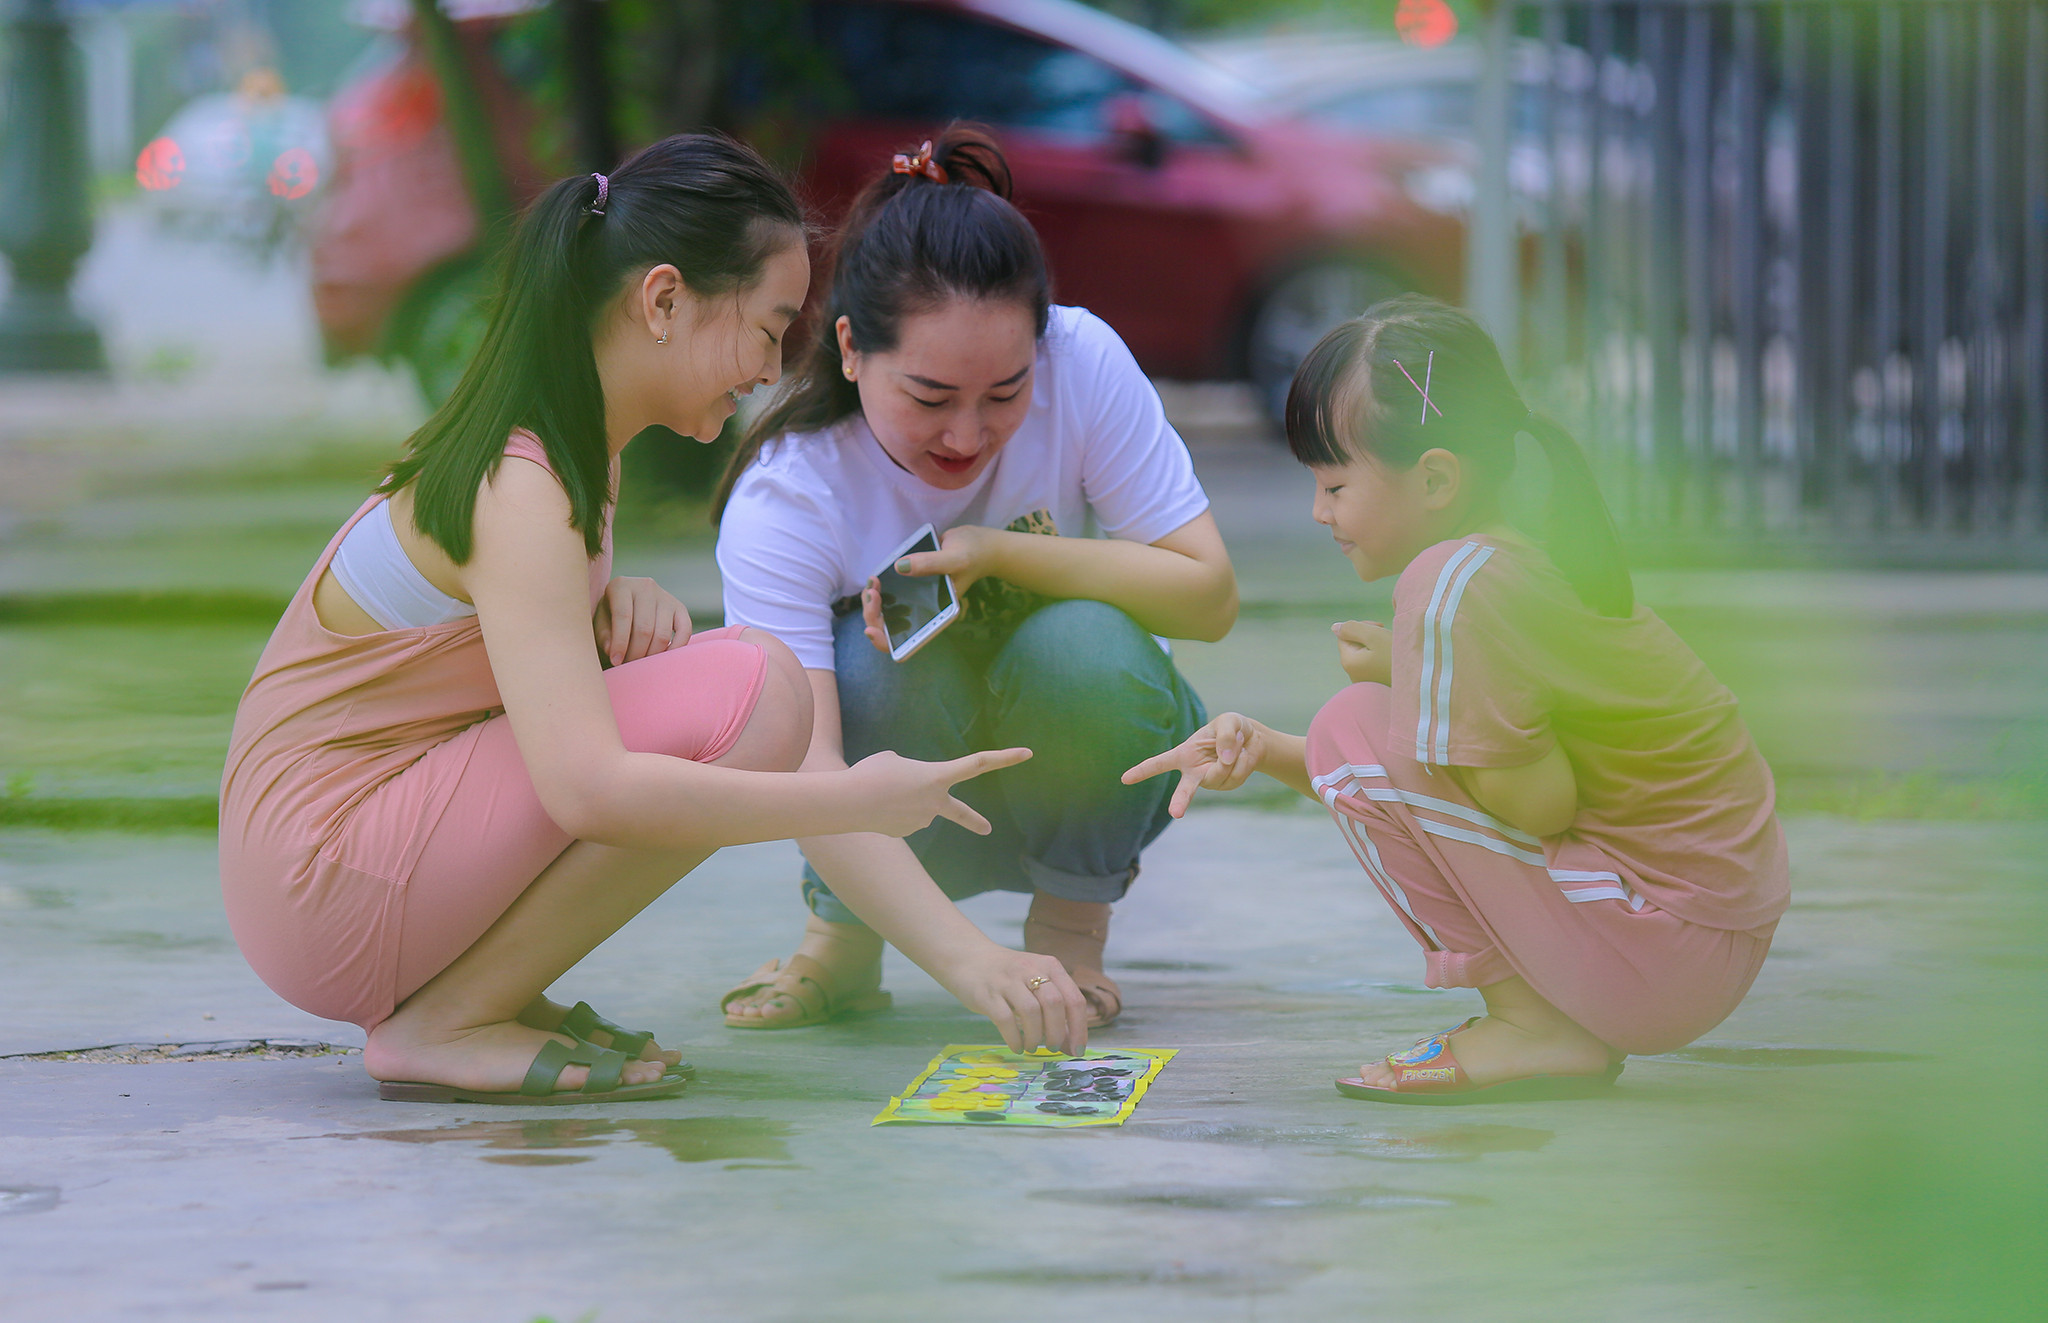 Chị em Nguyễn Phan Quỳnh Anh người đạt danh hiệu quán quân Sao nhí tỏa sáng 2019 – Sau giờ học, lại cùng nhau chơi những trò chơi dân gian để xua tan những căng thẳng. Ảnh: Đức Anh